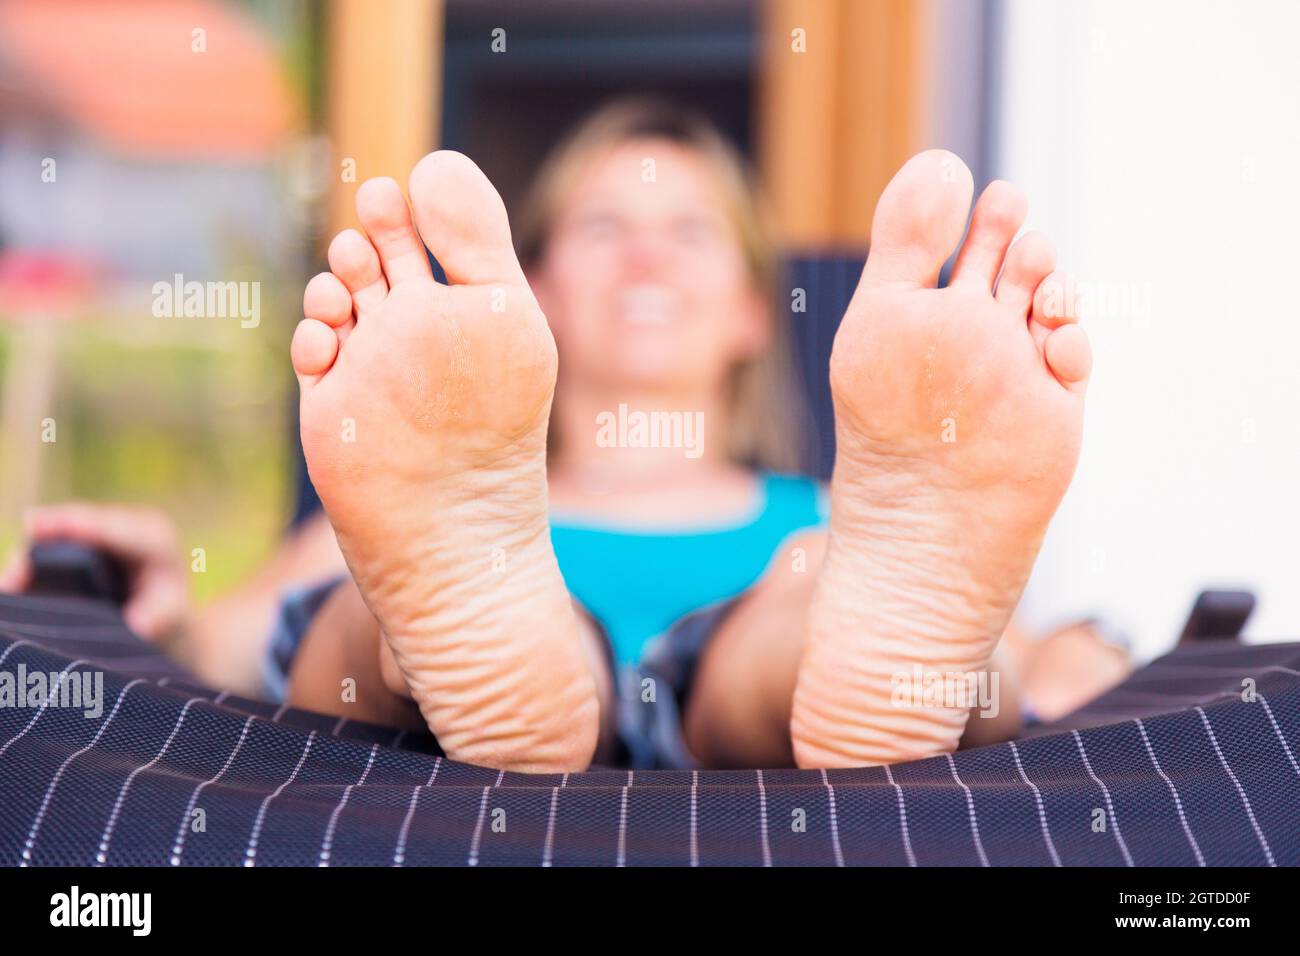 Mature Women Feet Pics